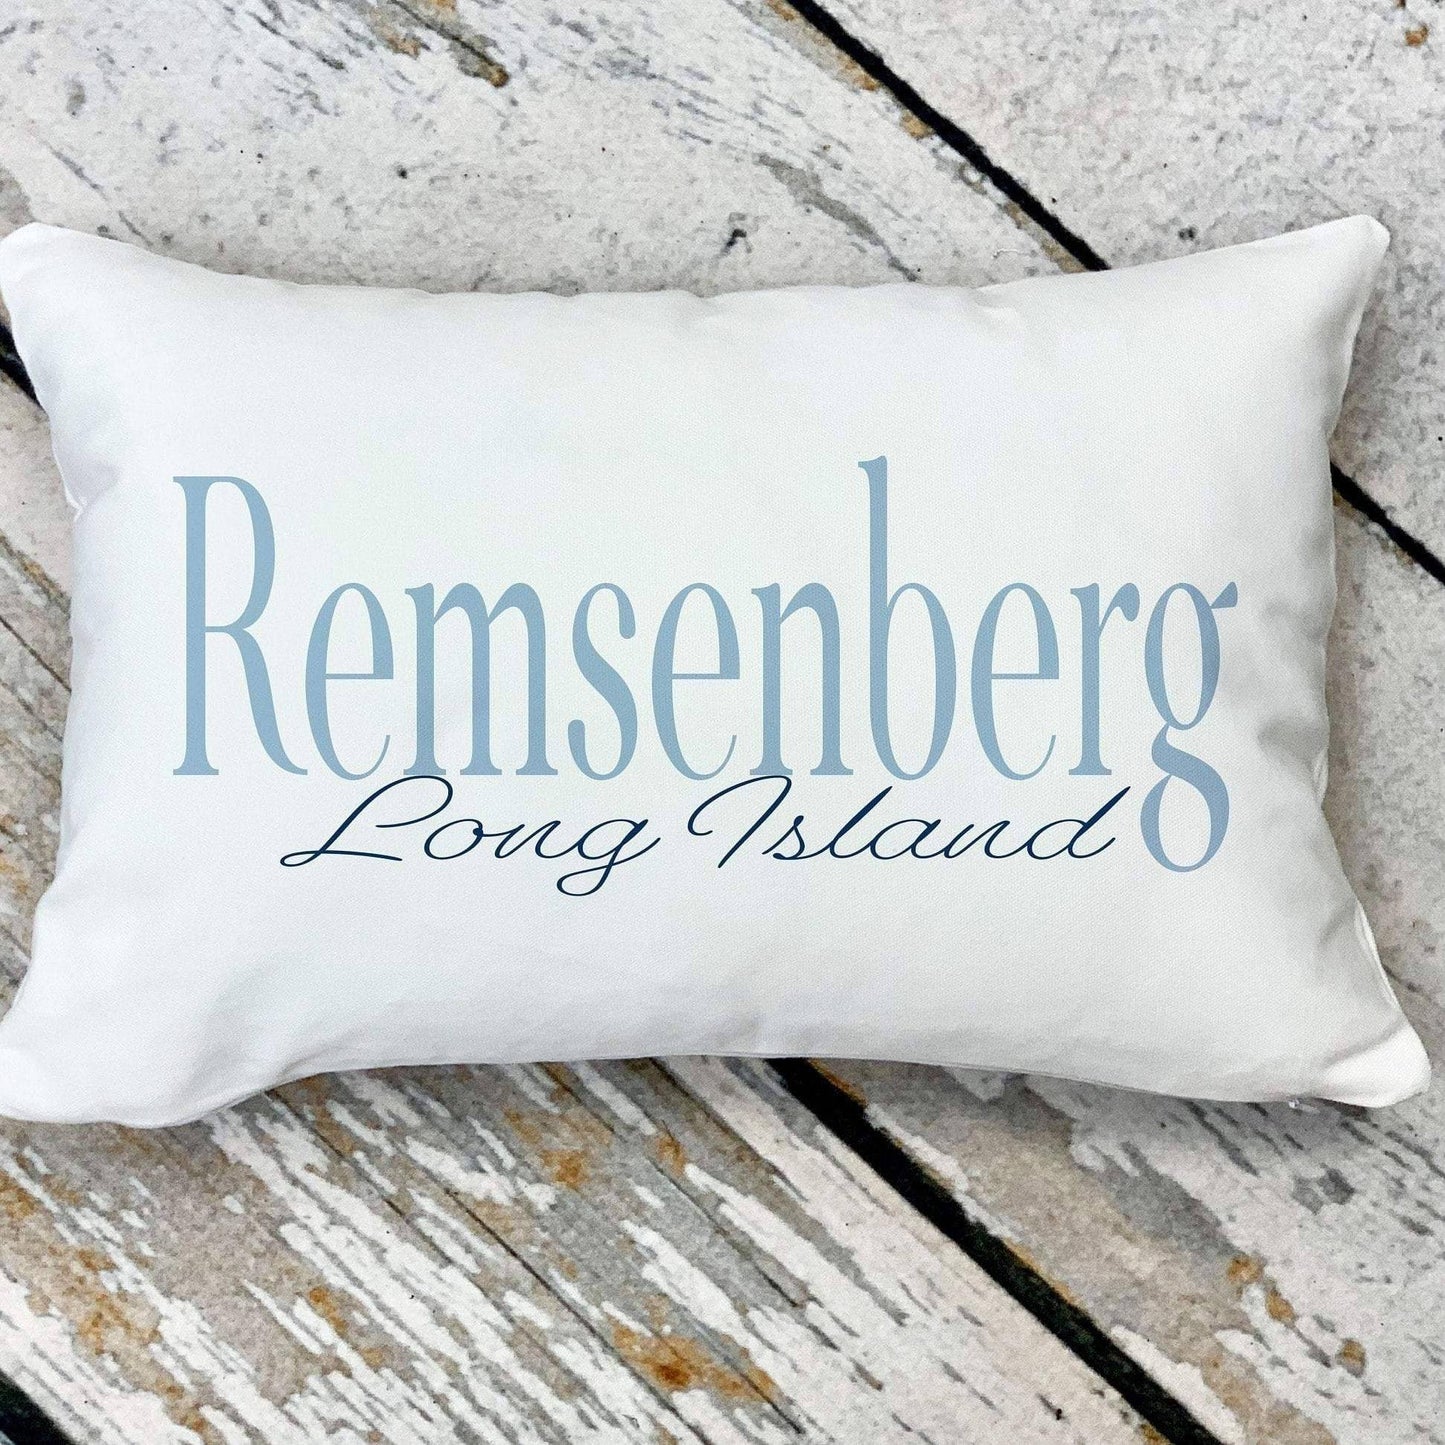 Remsenberg Long Island Pillow - Drifts East